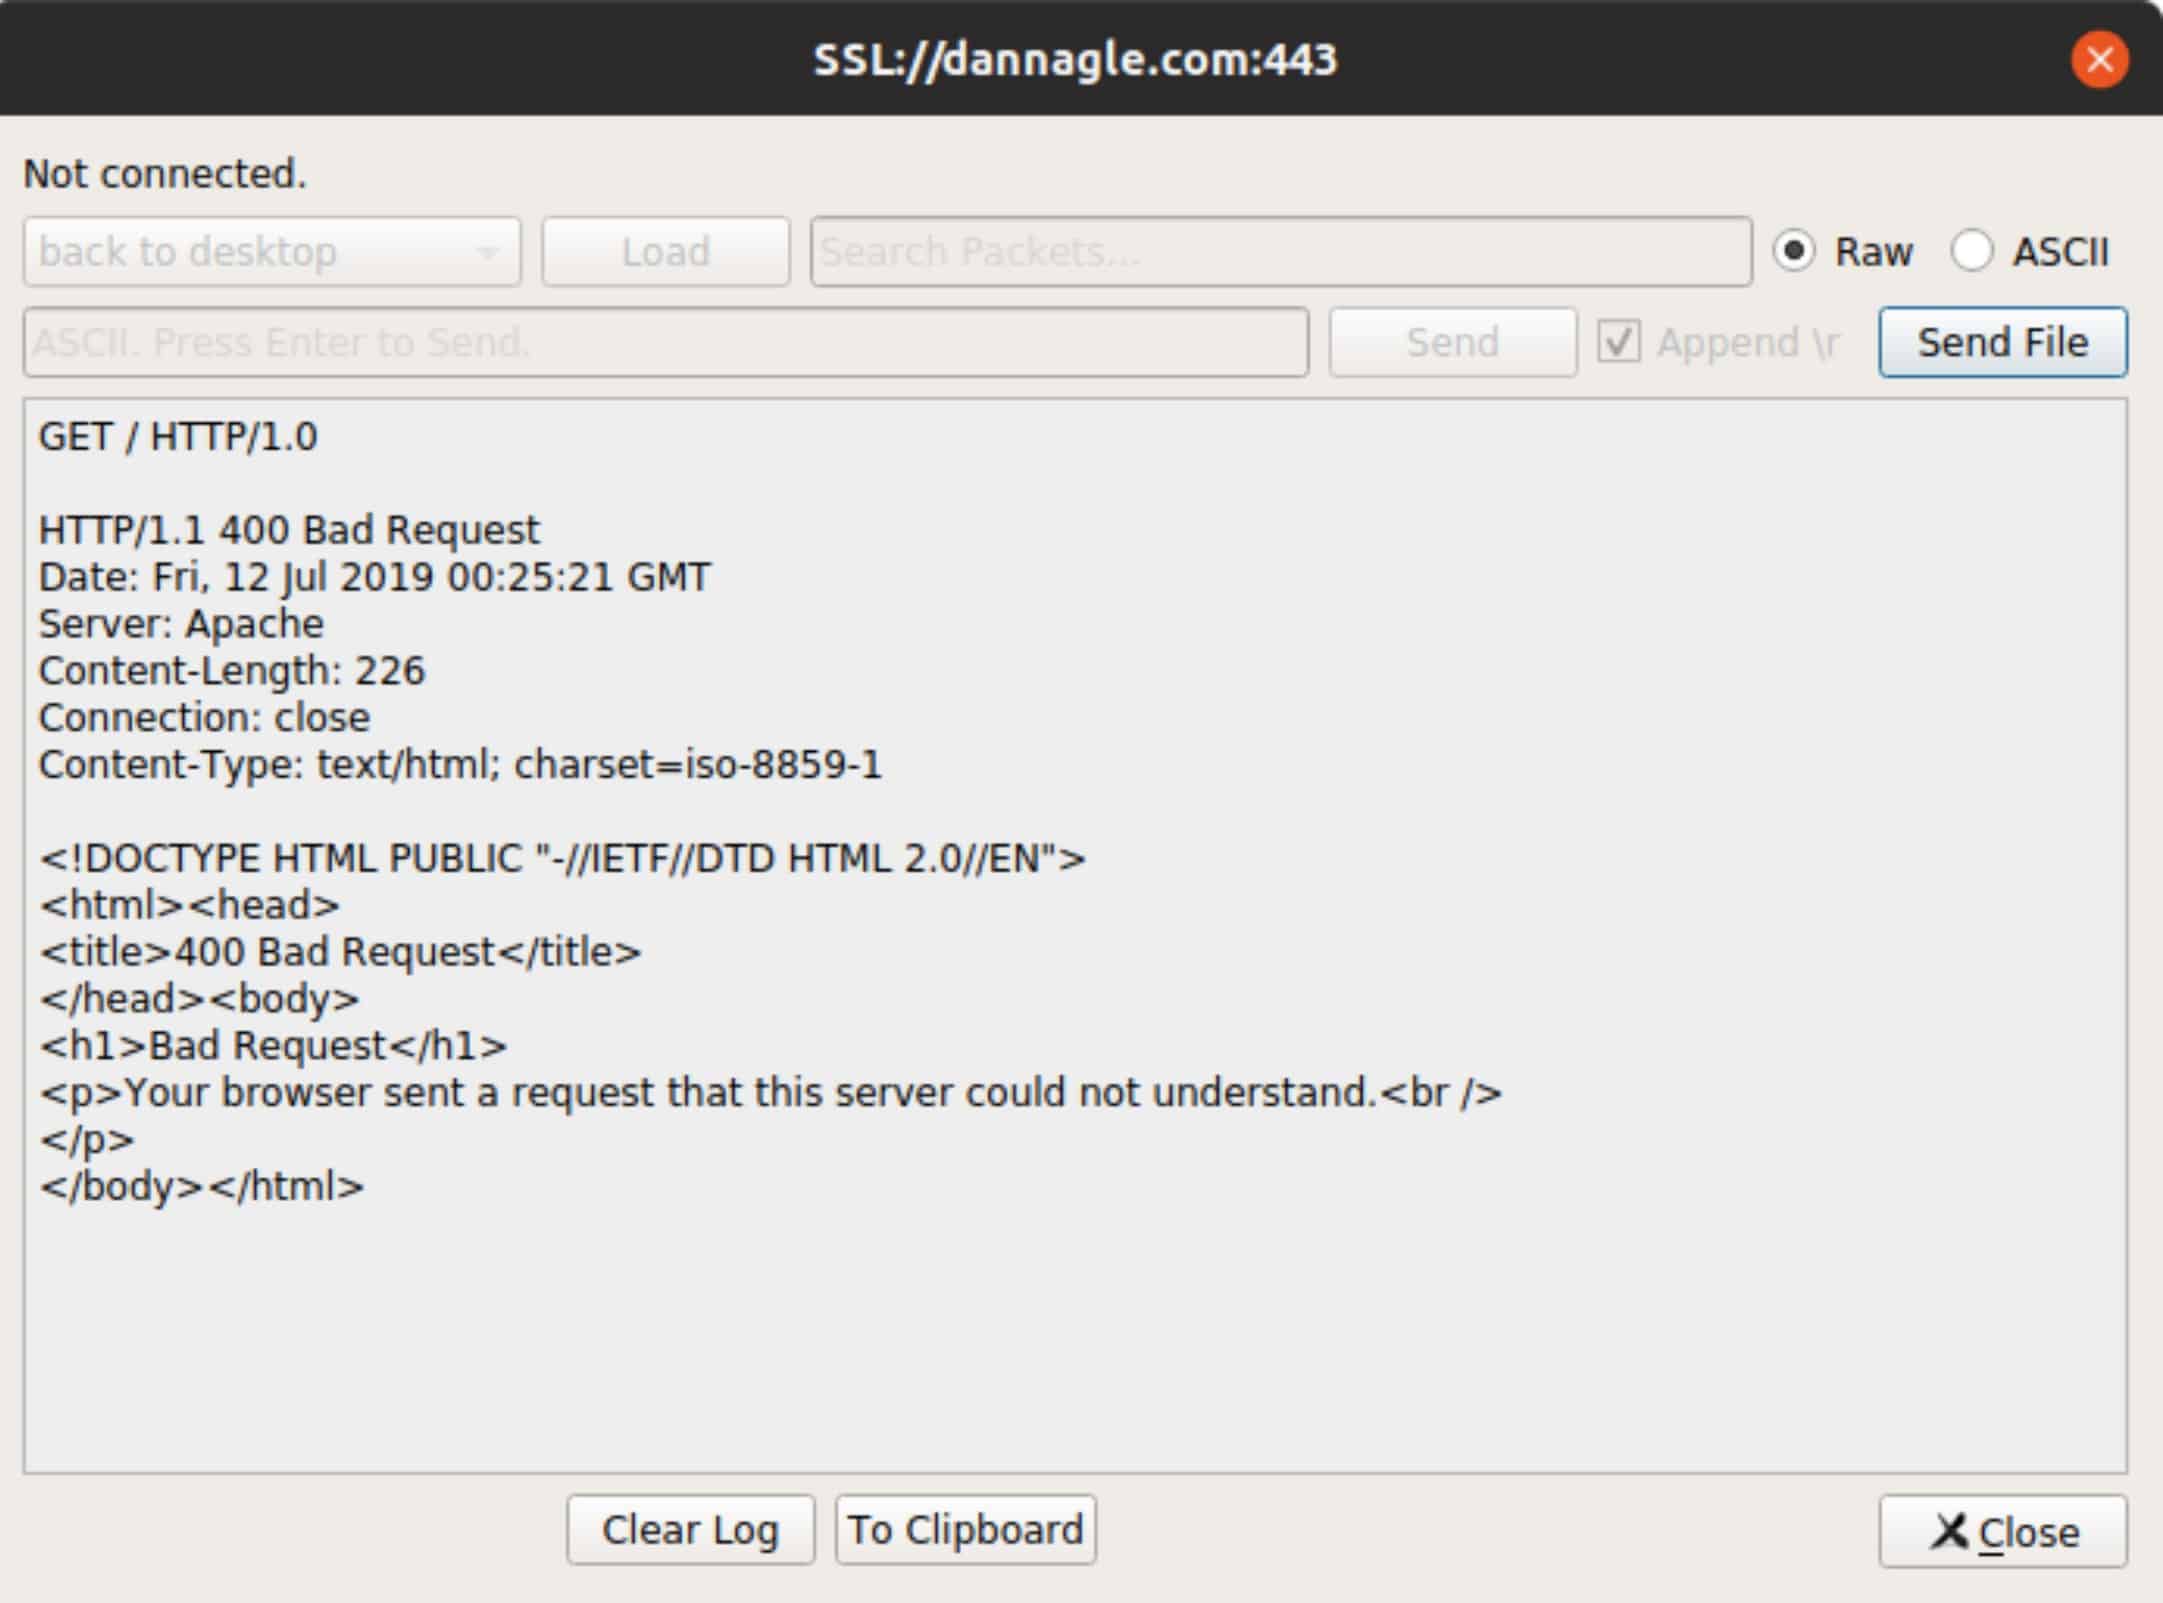 como-instalar-o-packet-sender-um-utilitario-para-envio-de-pacotes-tcp-no-ubuntu-linux-mint-fedora-debian